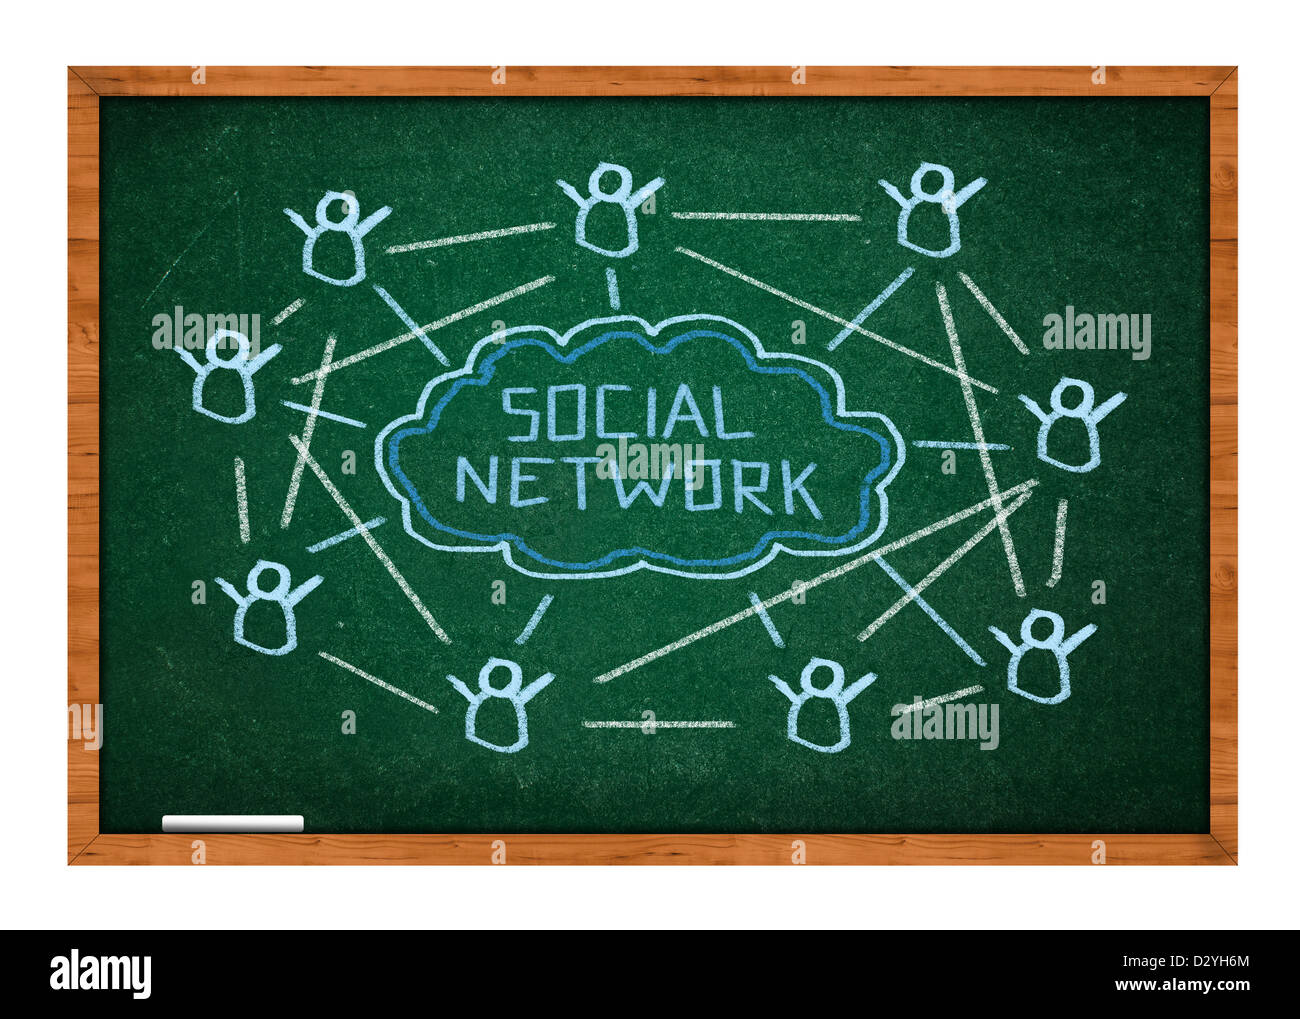 Soziales Netzwerk Begriffsschema an grünen Tafel mit Holzrahmen. Stockfoto